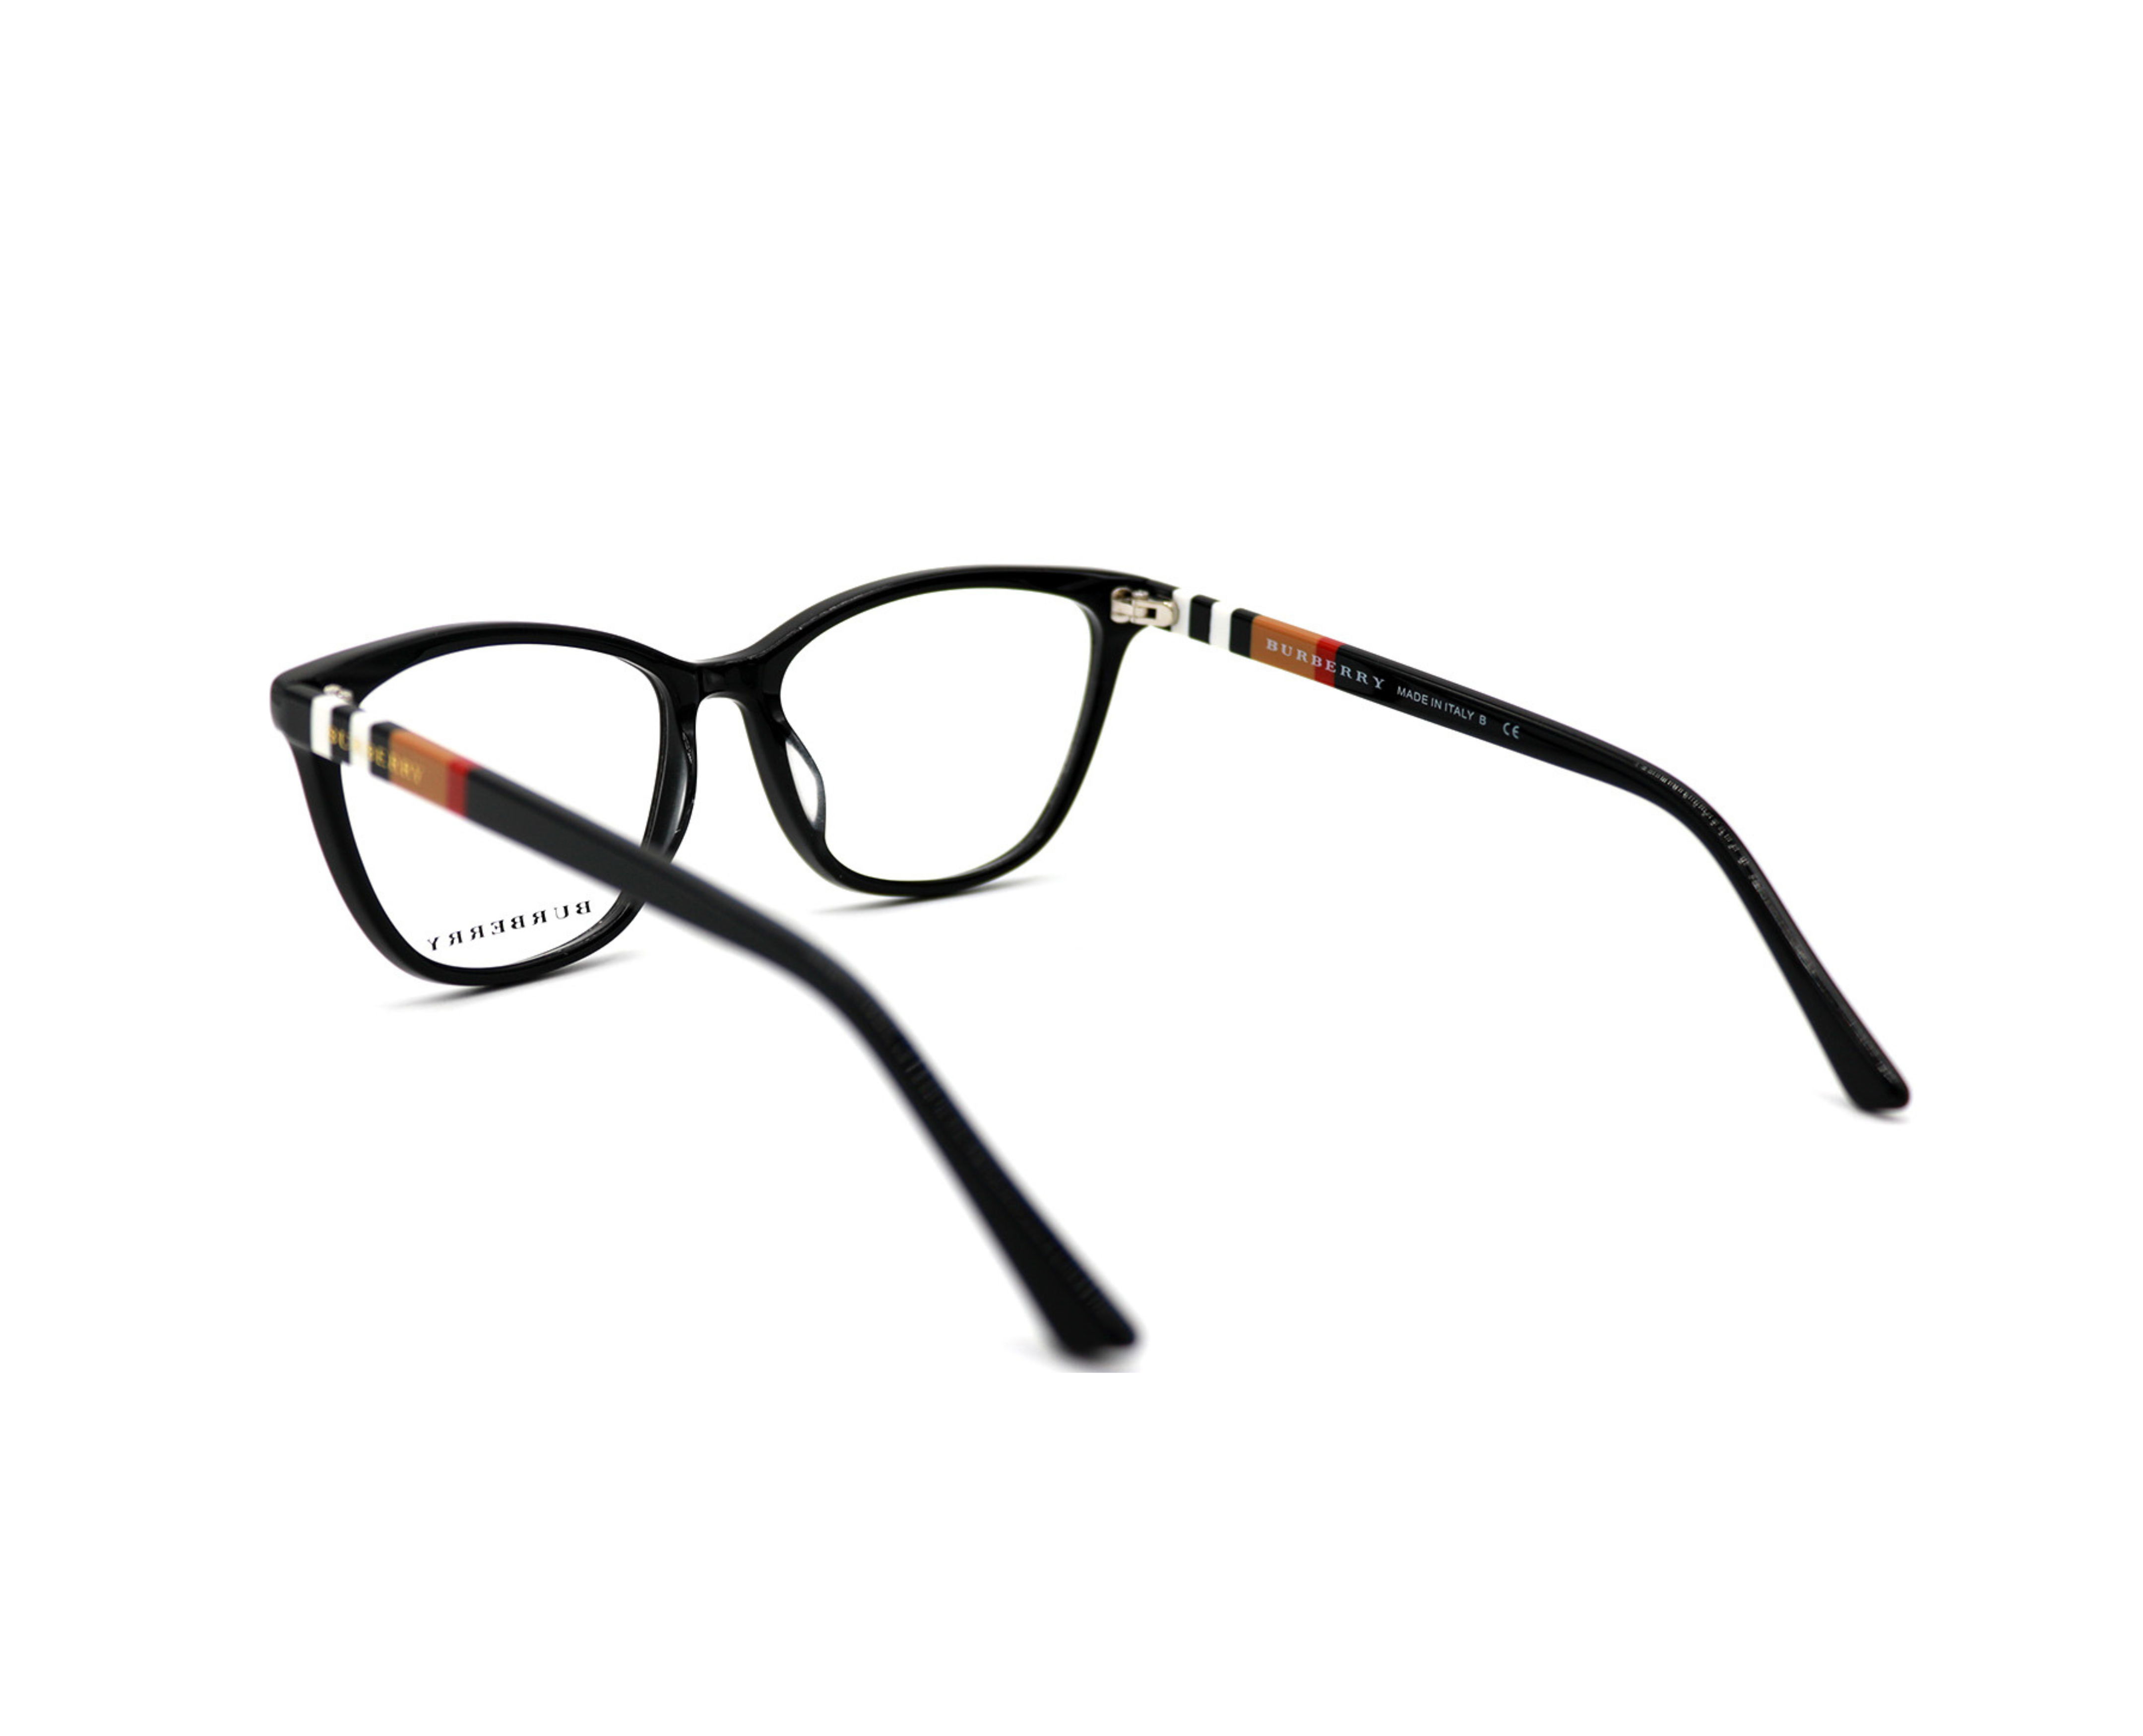 NS Luxury - 2291 - Black - Eyeglasses